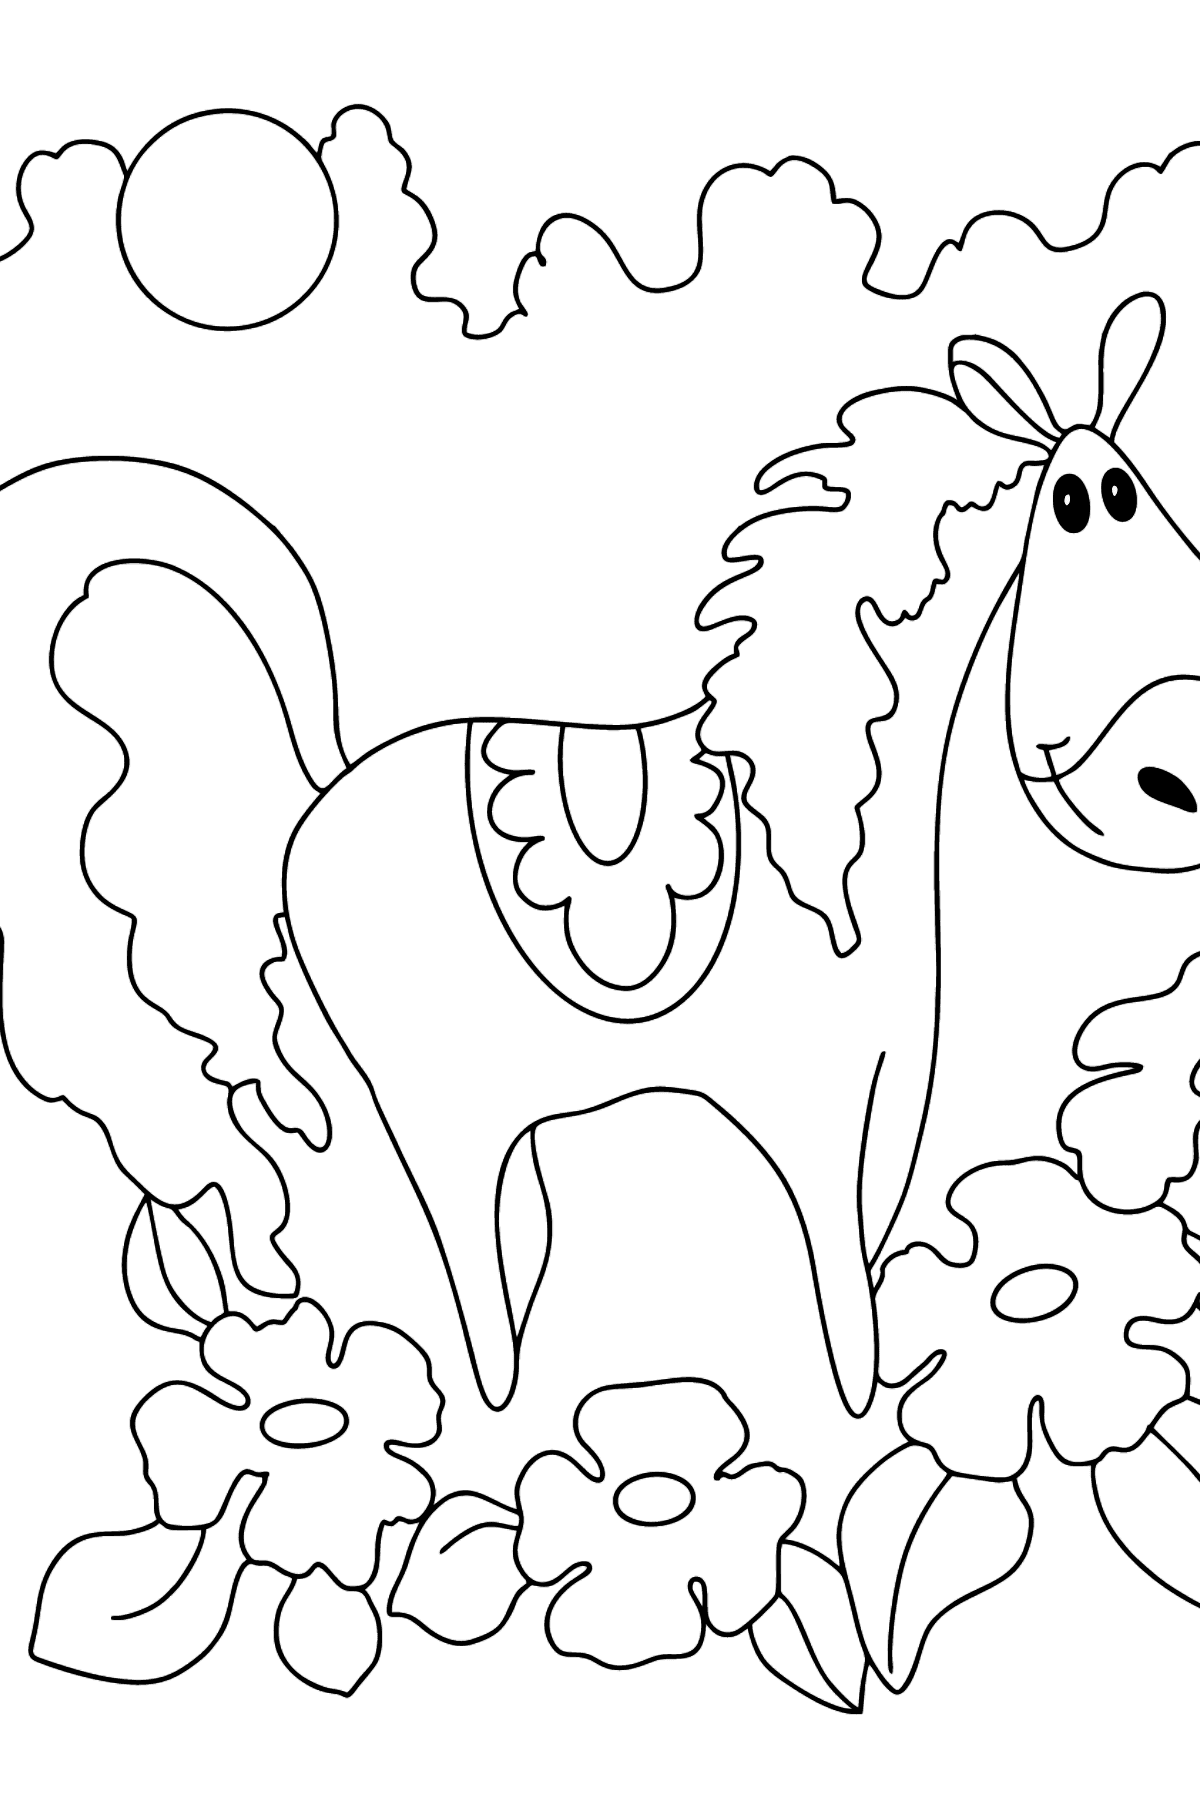 Desenho de Cavalo encantador para colorir difícil - Imagens para Colorir para Crianças